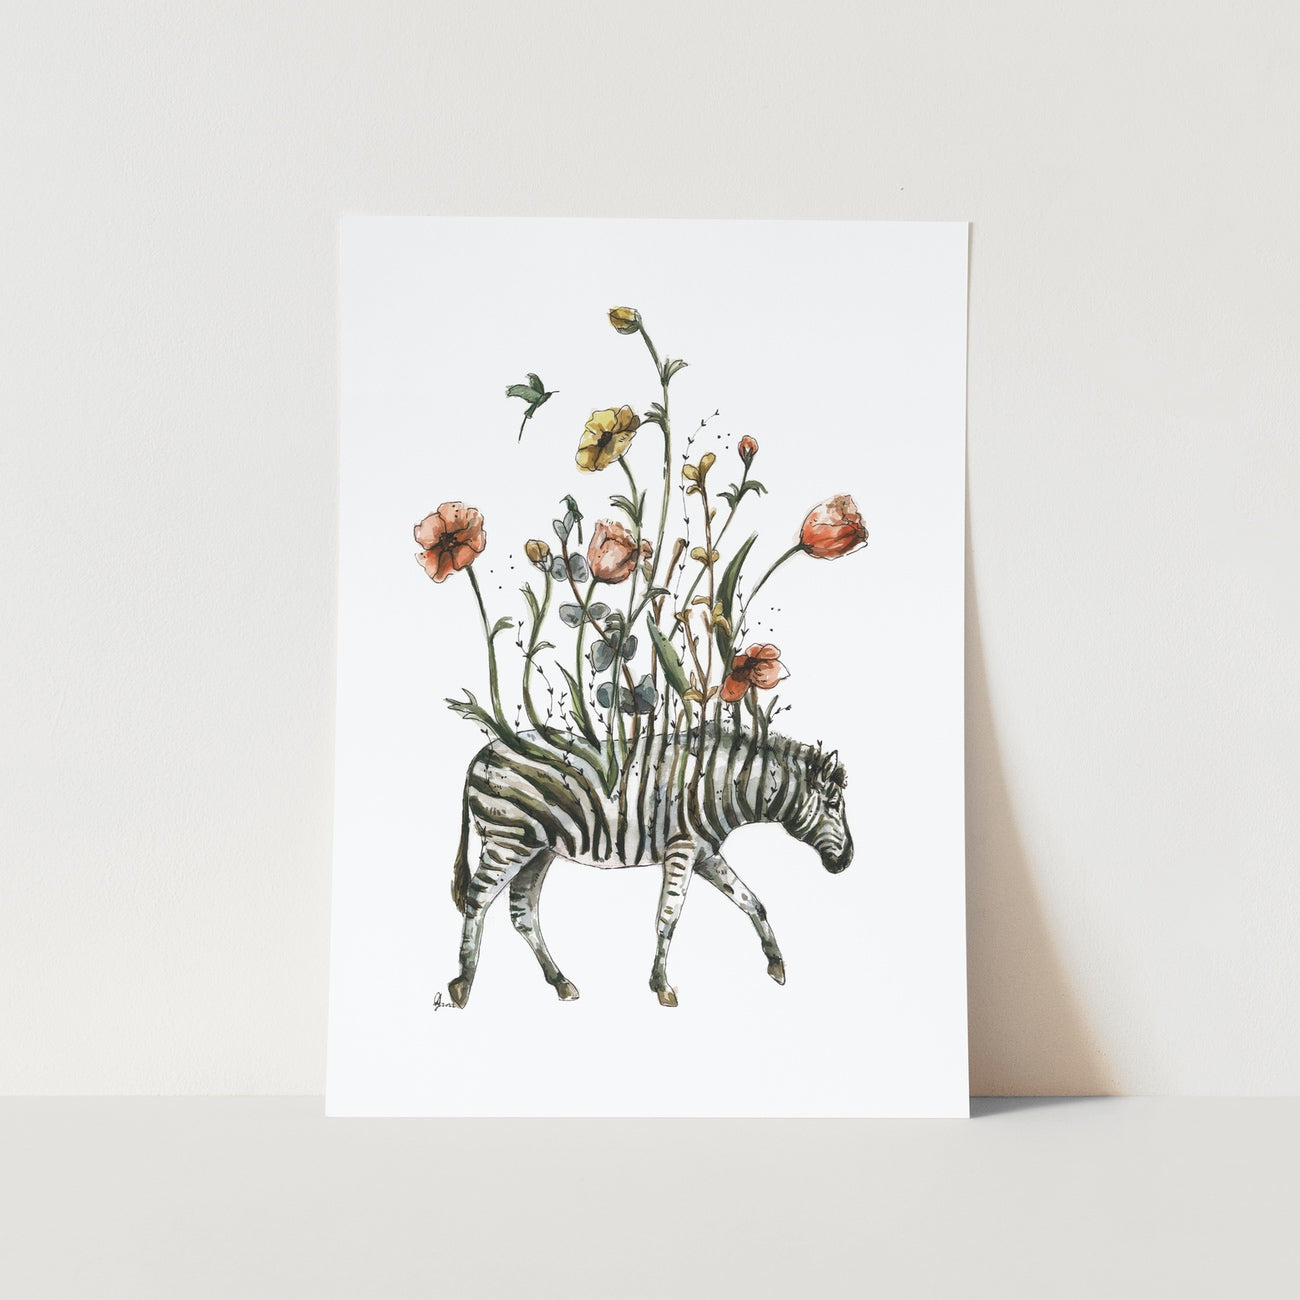 Zebra Flowers by Mareli Art Print